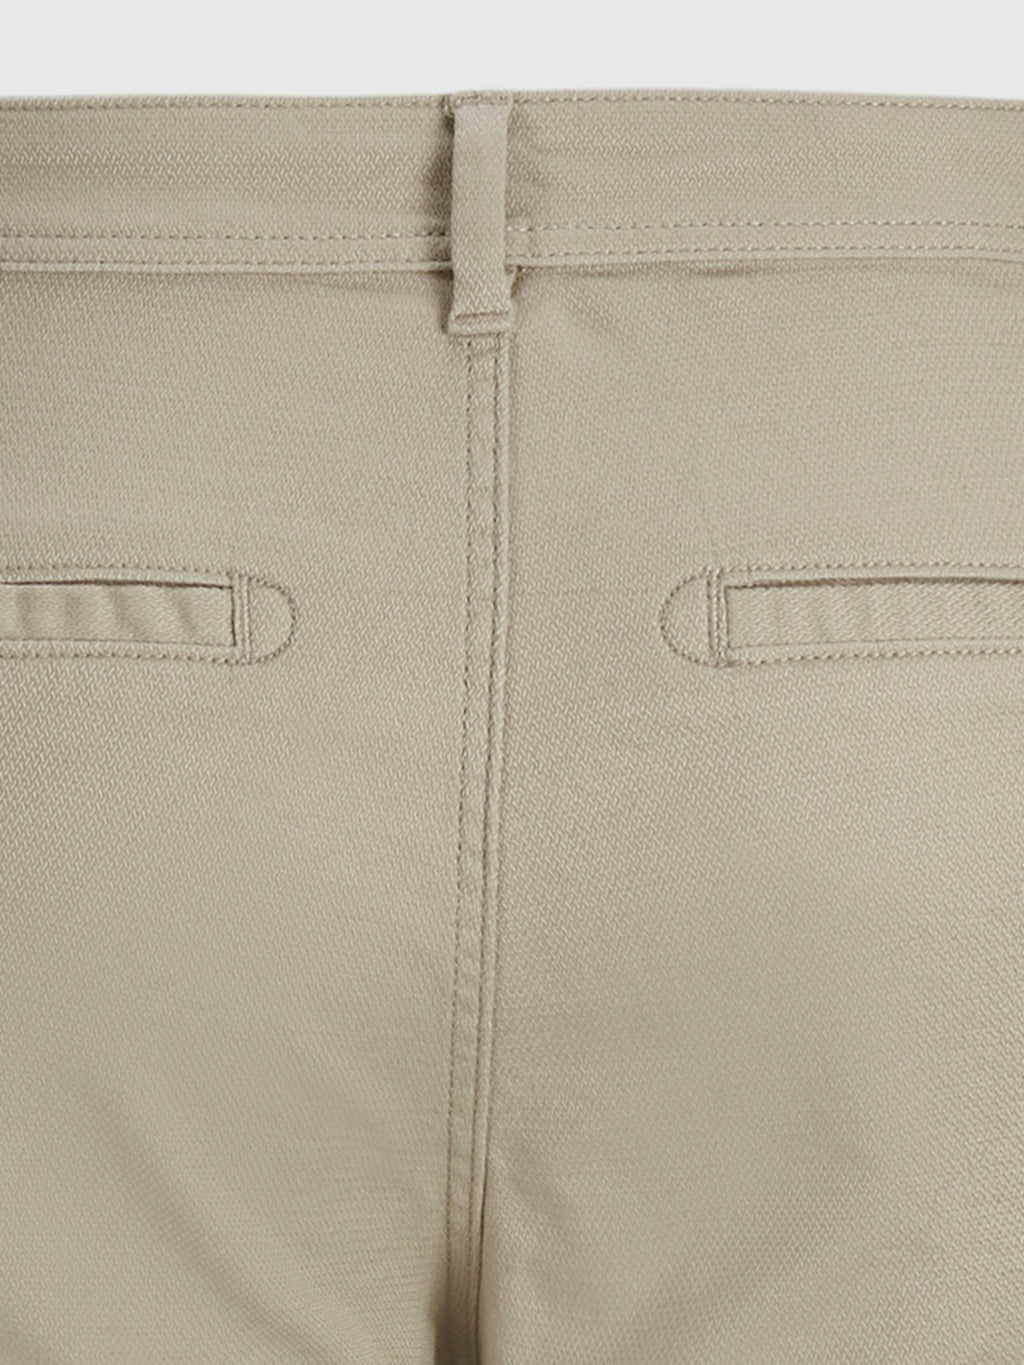 原始性能结构裤子 - 米色